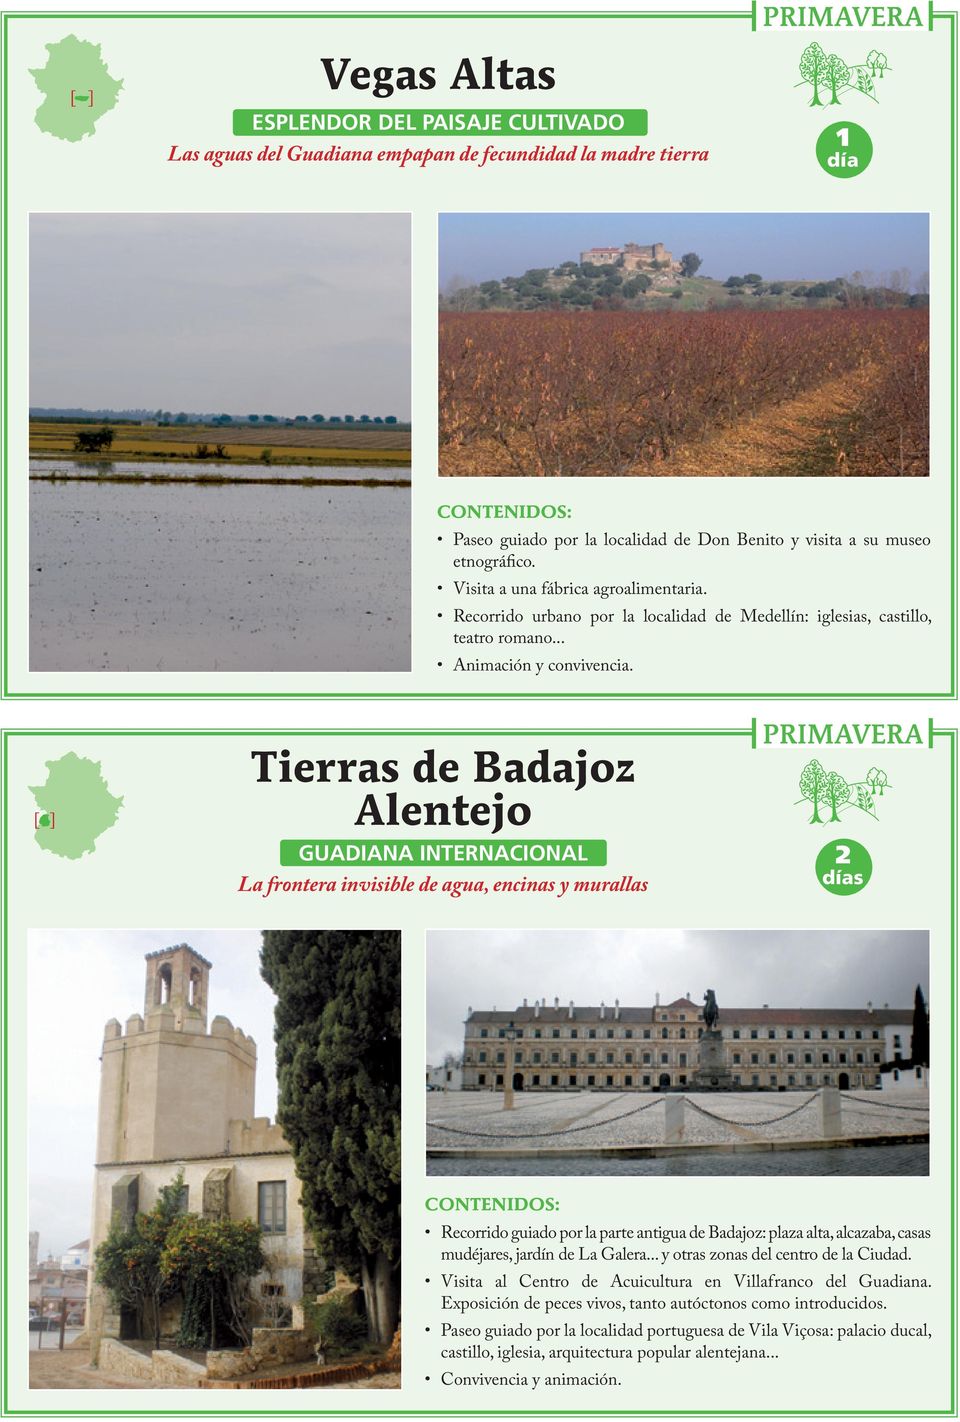 Tierras de Badajoz Alentejo GUADIANA INTERNACIONAL La frontera invisible de agua, encinas y murallas 2 Recorrido guiado por la parte antigua de Badajoz: plaza alta, alcazaba, casas mudéjares, jardín